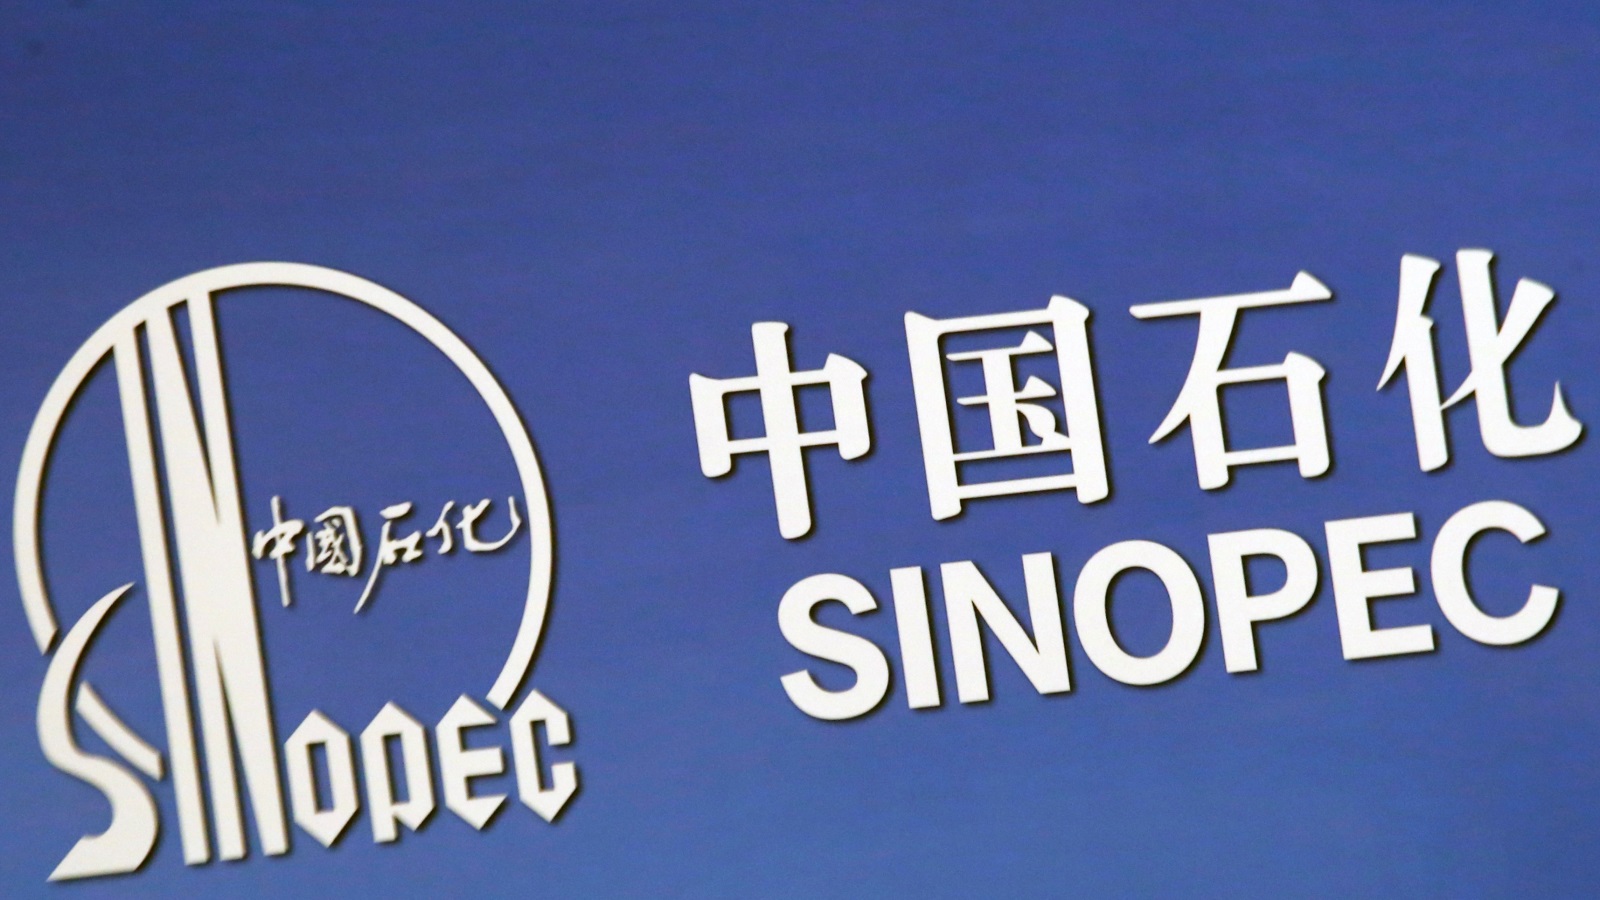  سينوبك الصينية أكبر شركة تكرير في آسيا تقلص إنتاج المصافي بـ600 ألف برميل يوميا (رويترز)